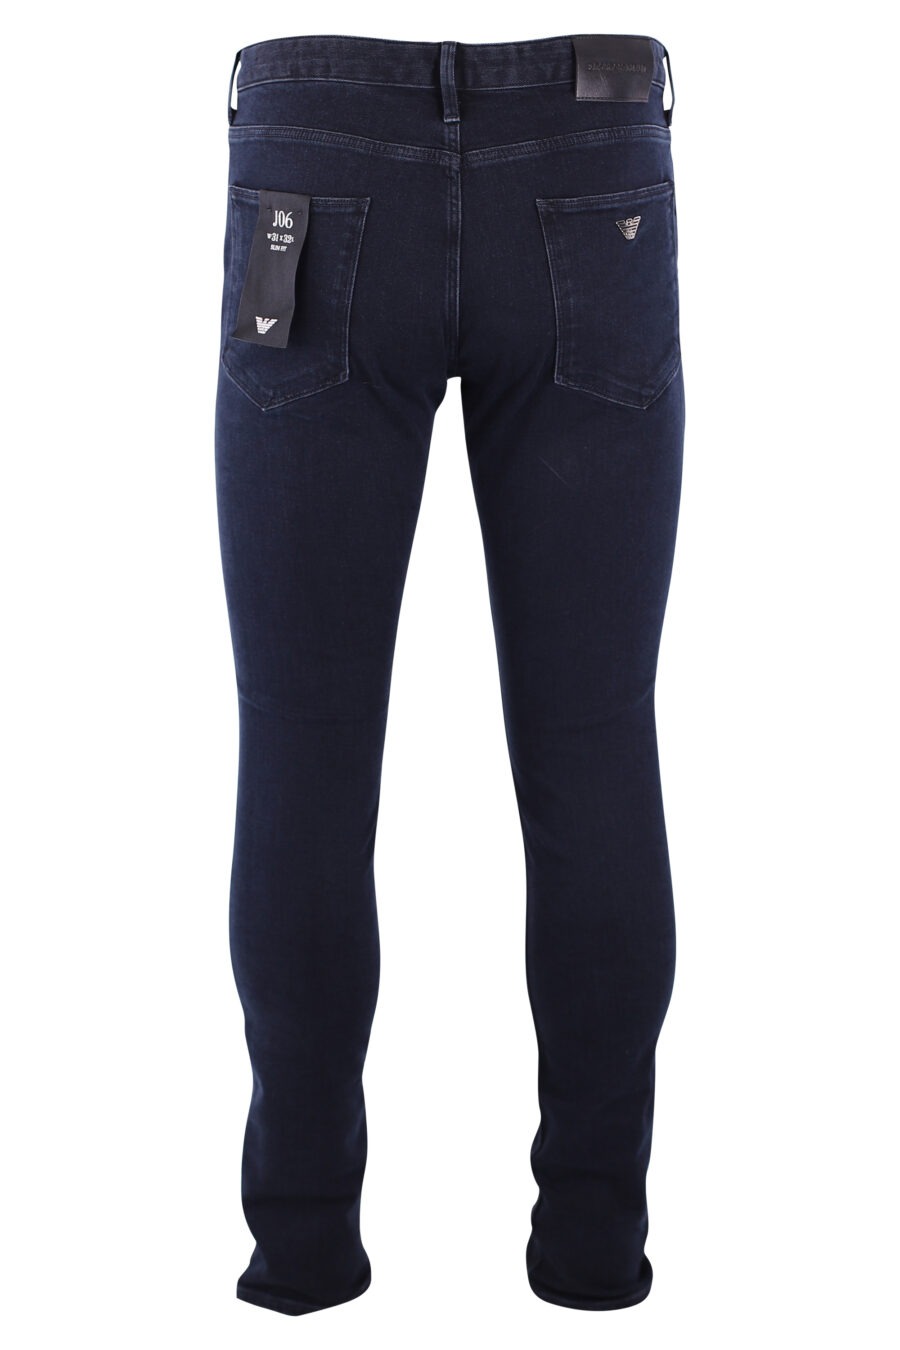 Dunkelblaue Jeans mit Mini-Adler-Logo - IMG 3206